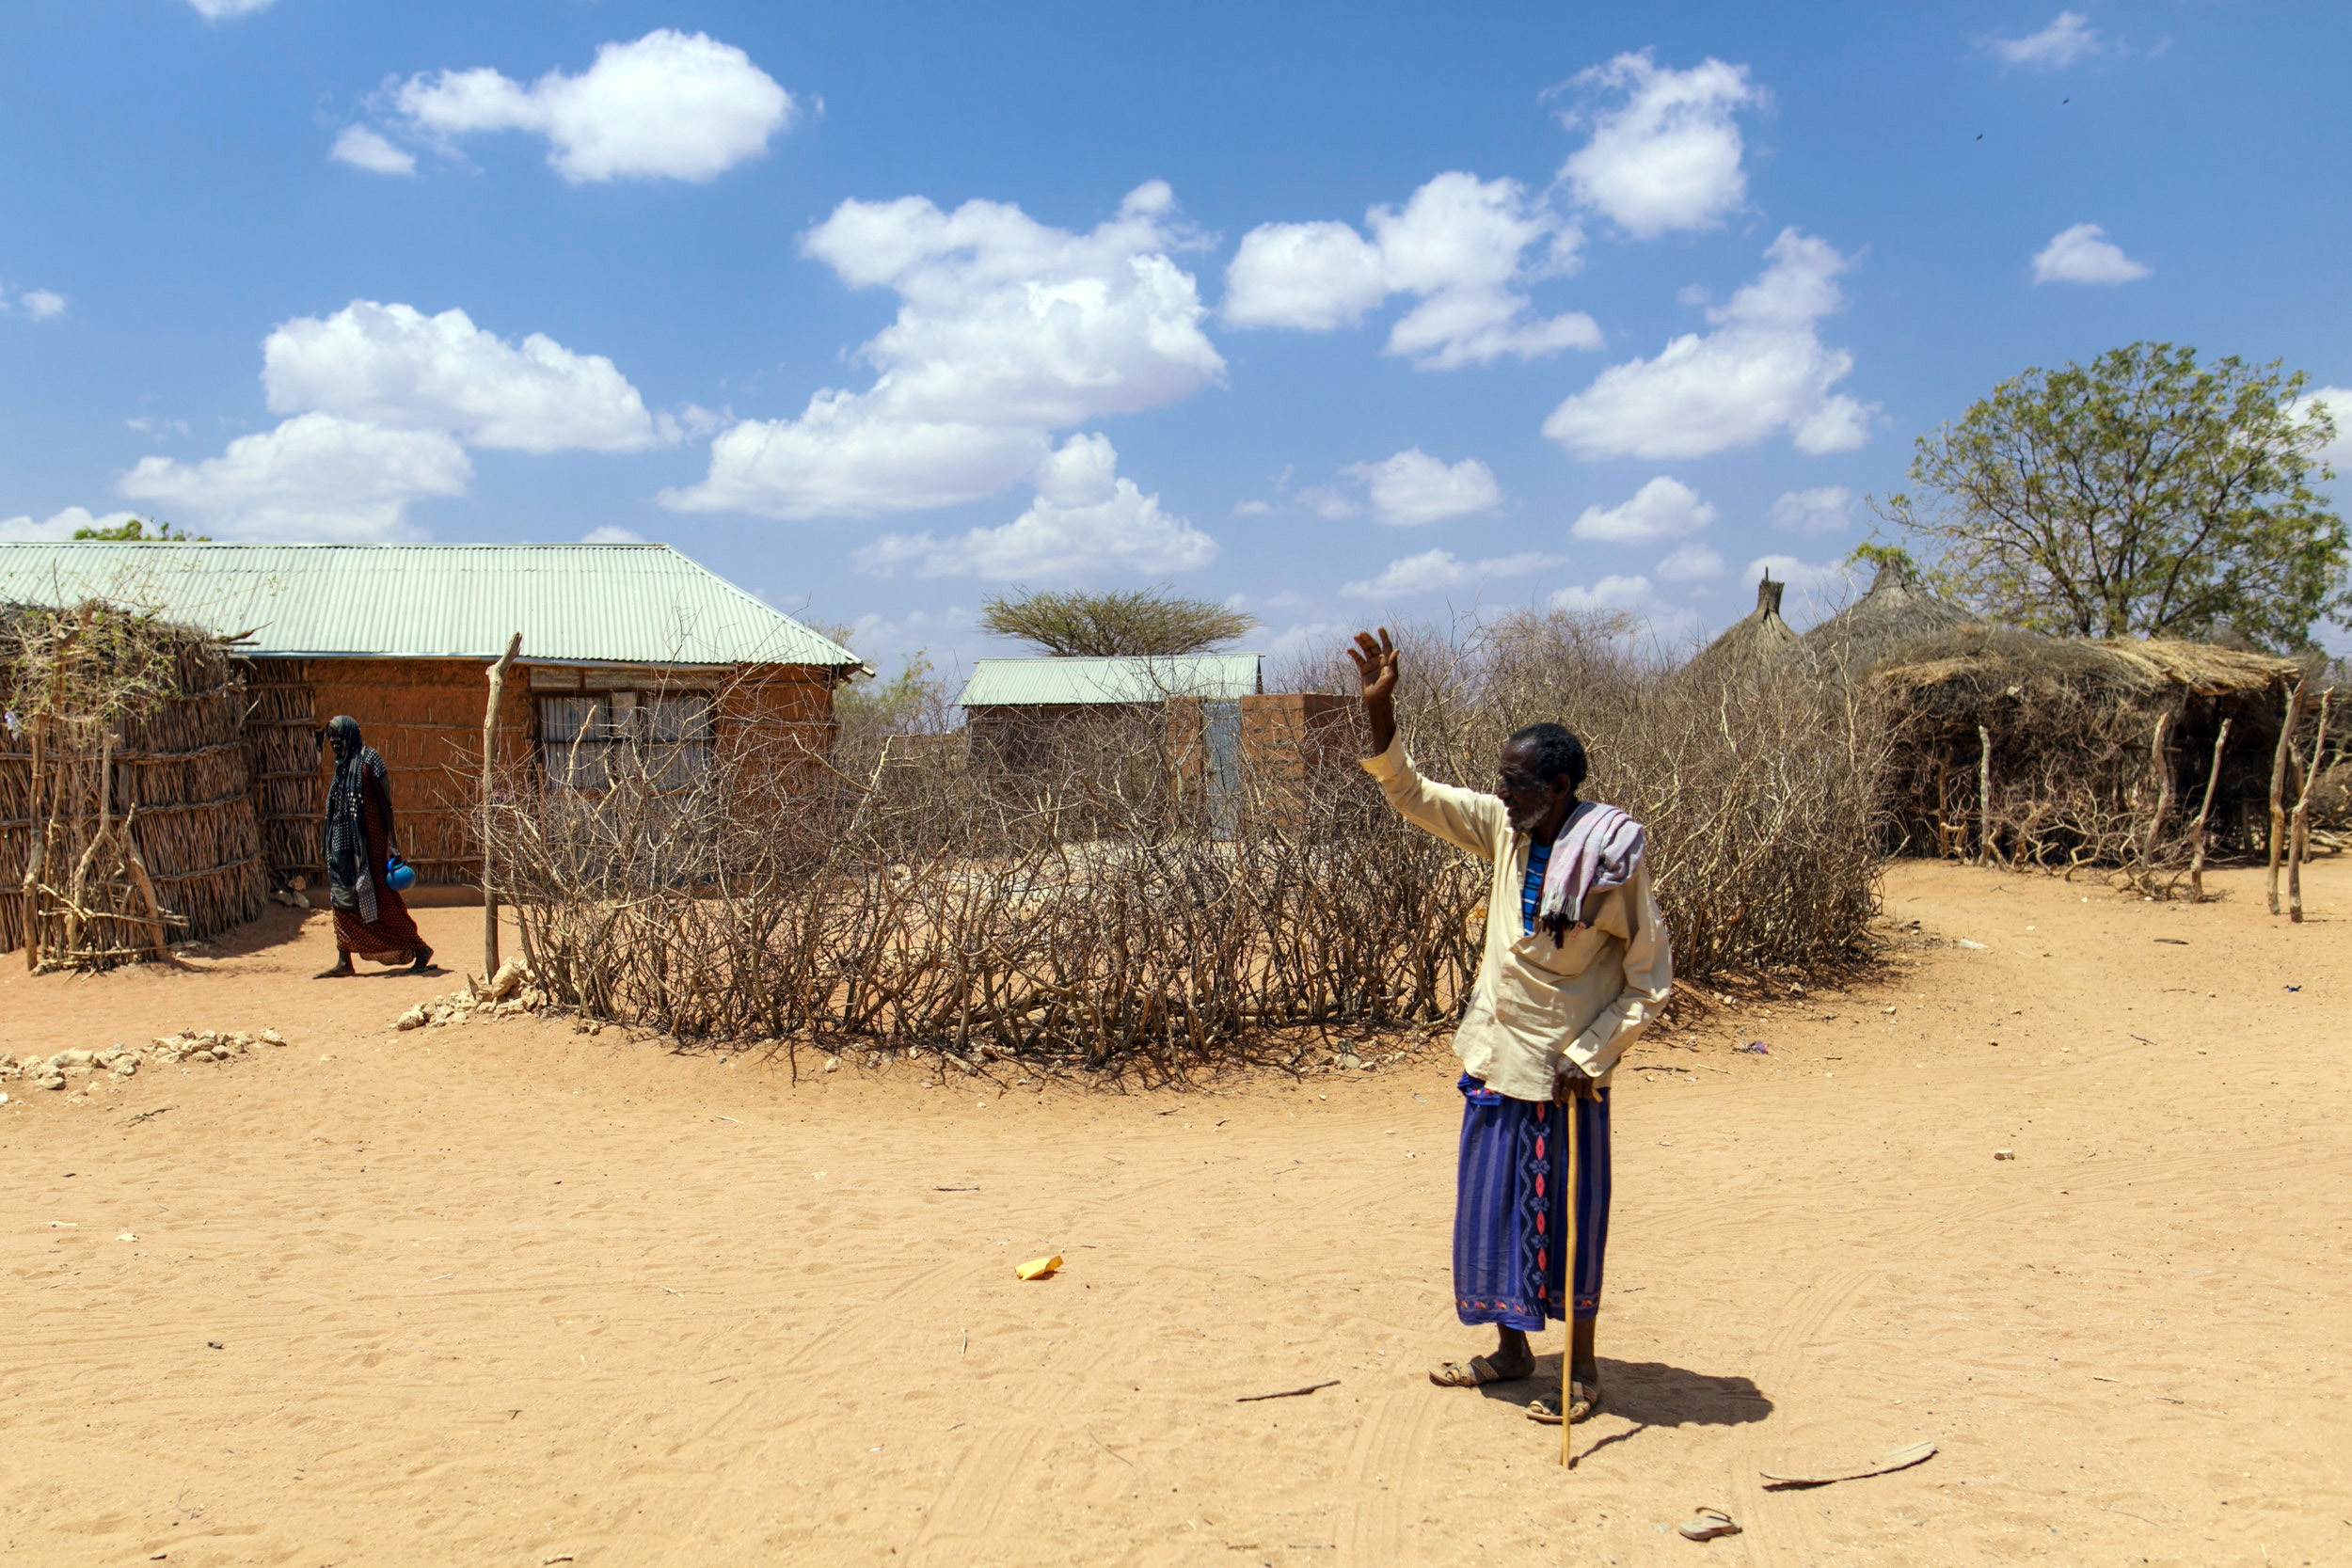 Dorf in der Somali-Region in Äthiopien, in dem sich wegen der anhaltenden Dürre Nomaden angesiedelt haben